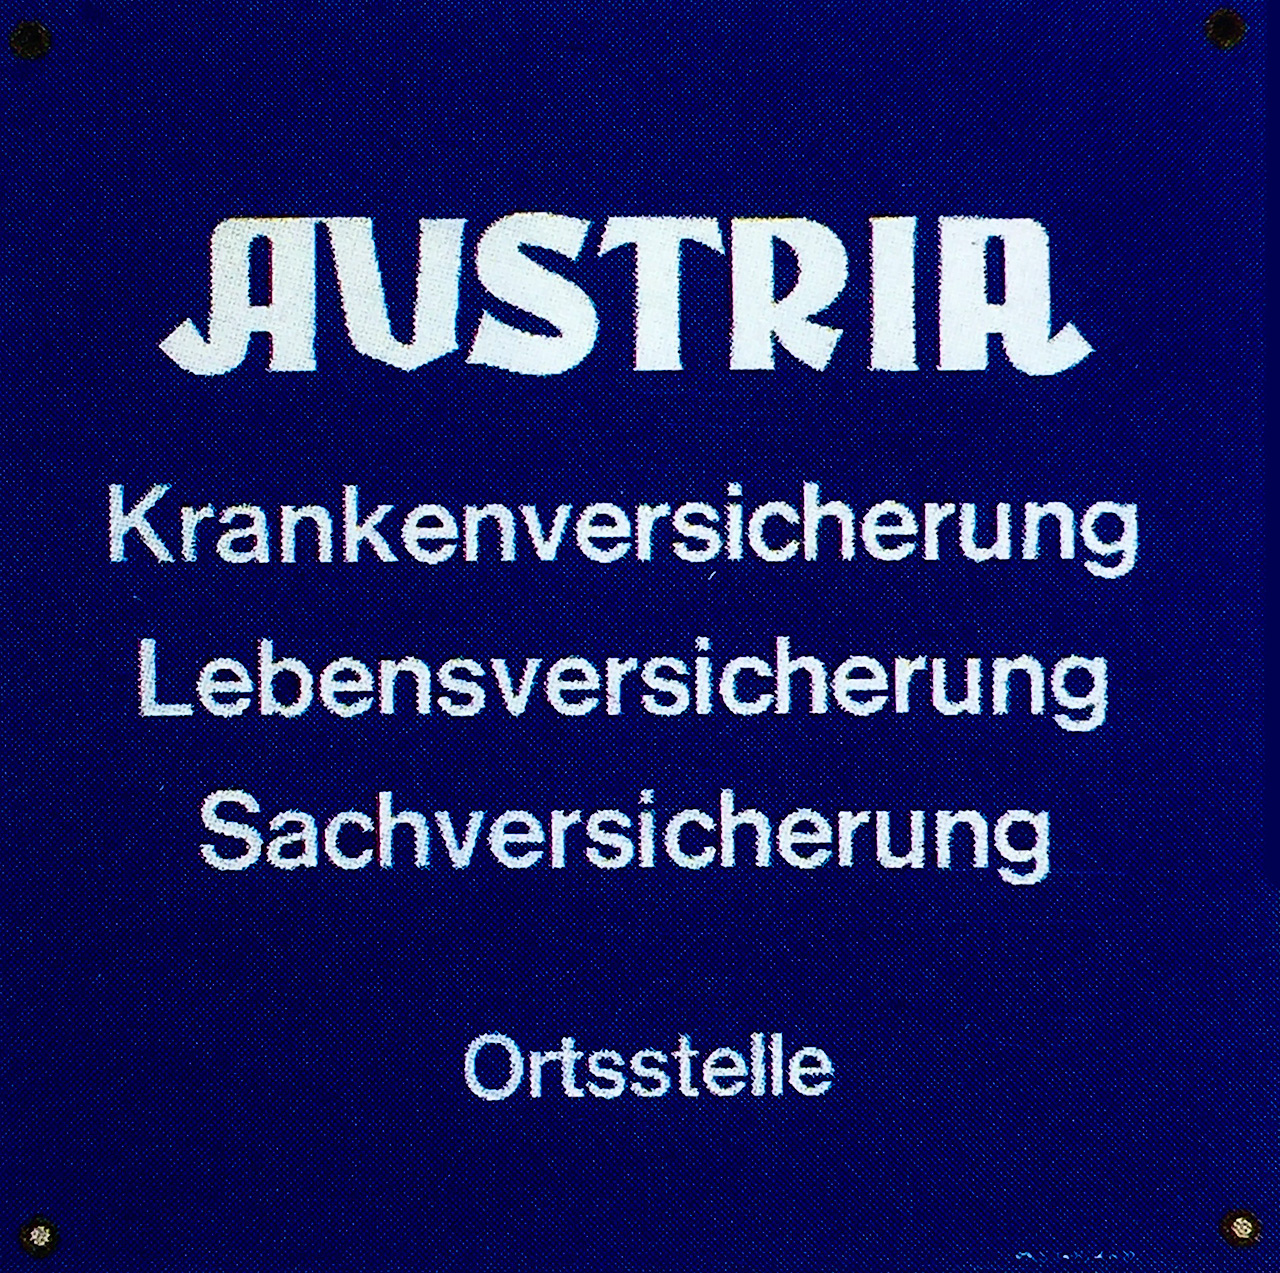 Austria Versicherung